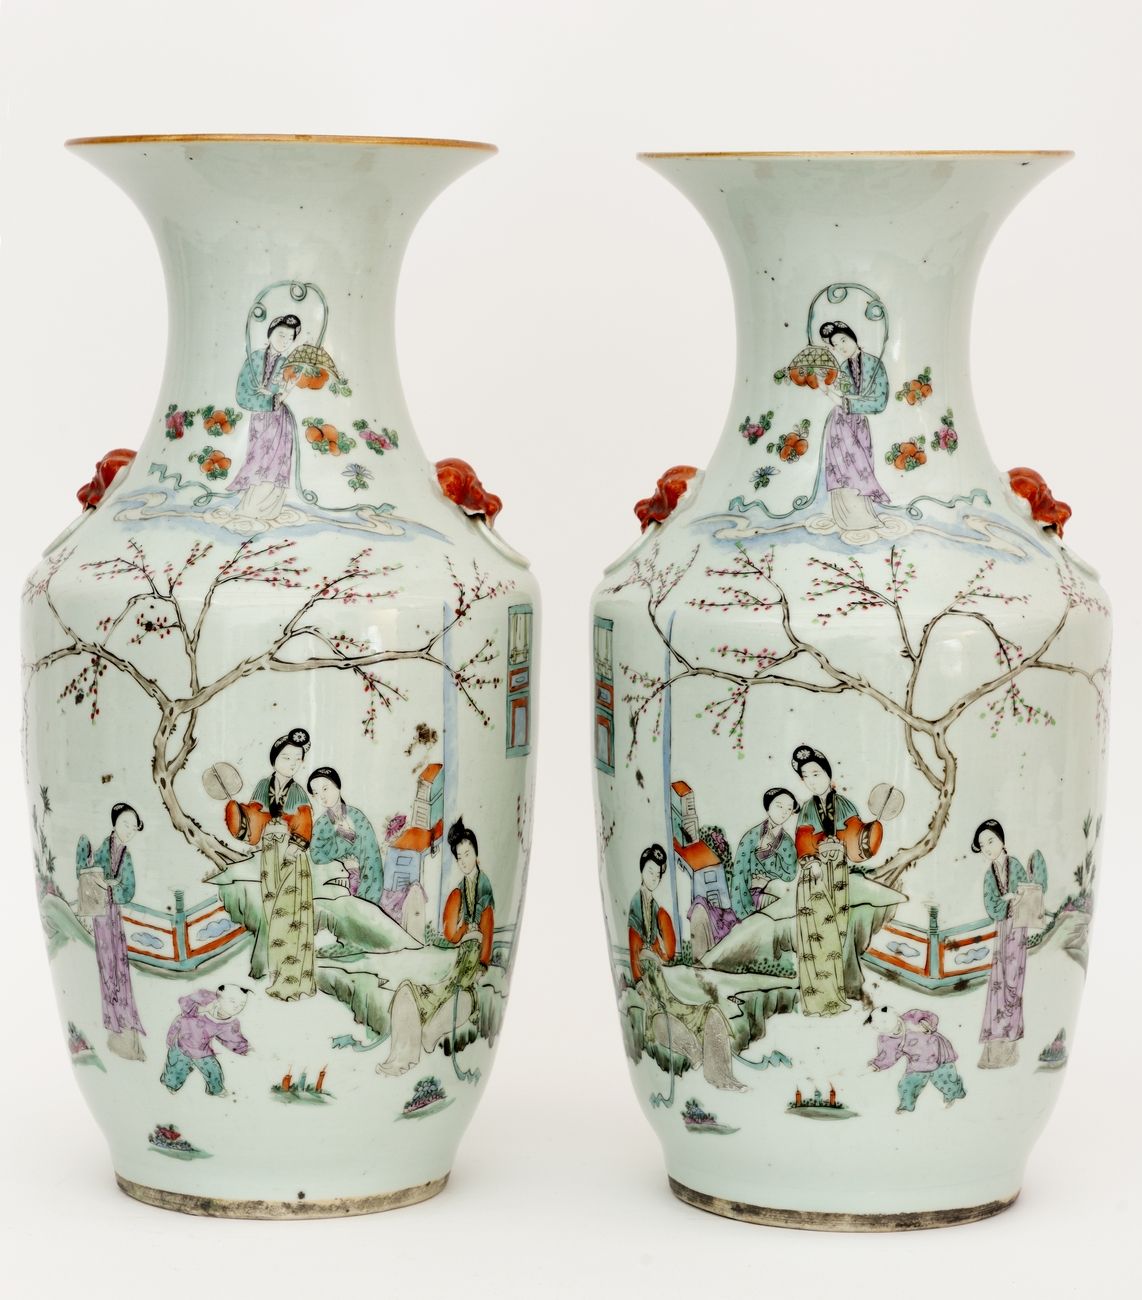 Null 中国，19-20世纪
一对瓷器花瓶，上面有多色珐琅装饰的儿童宫女和一首诗。
在底座下盖有印章。
高度 : 44 cm
(底座上的星星)